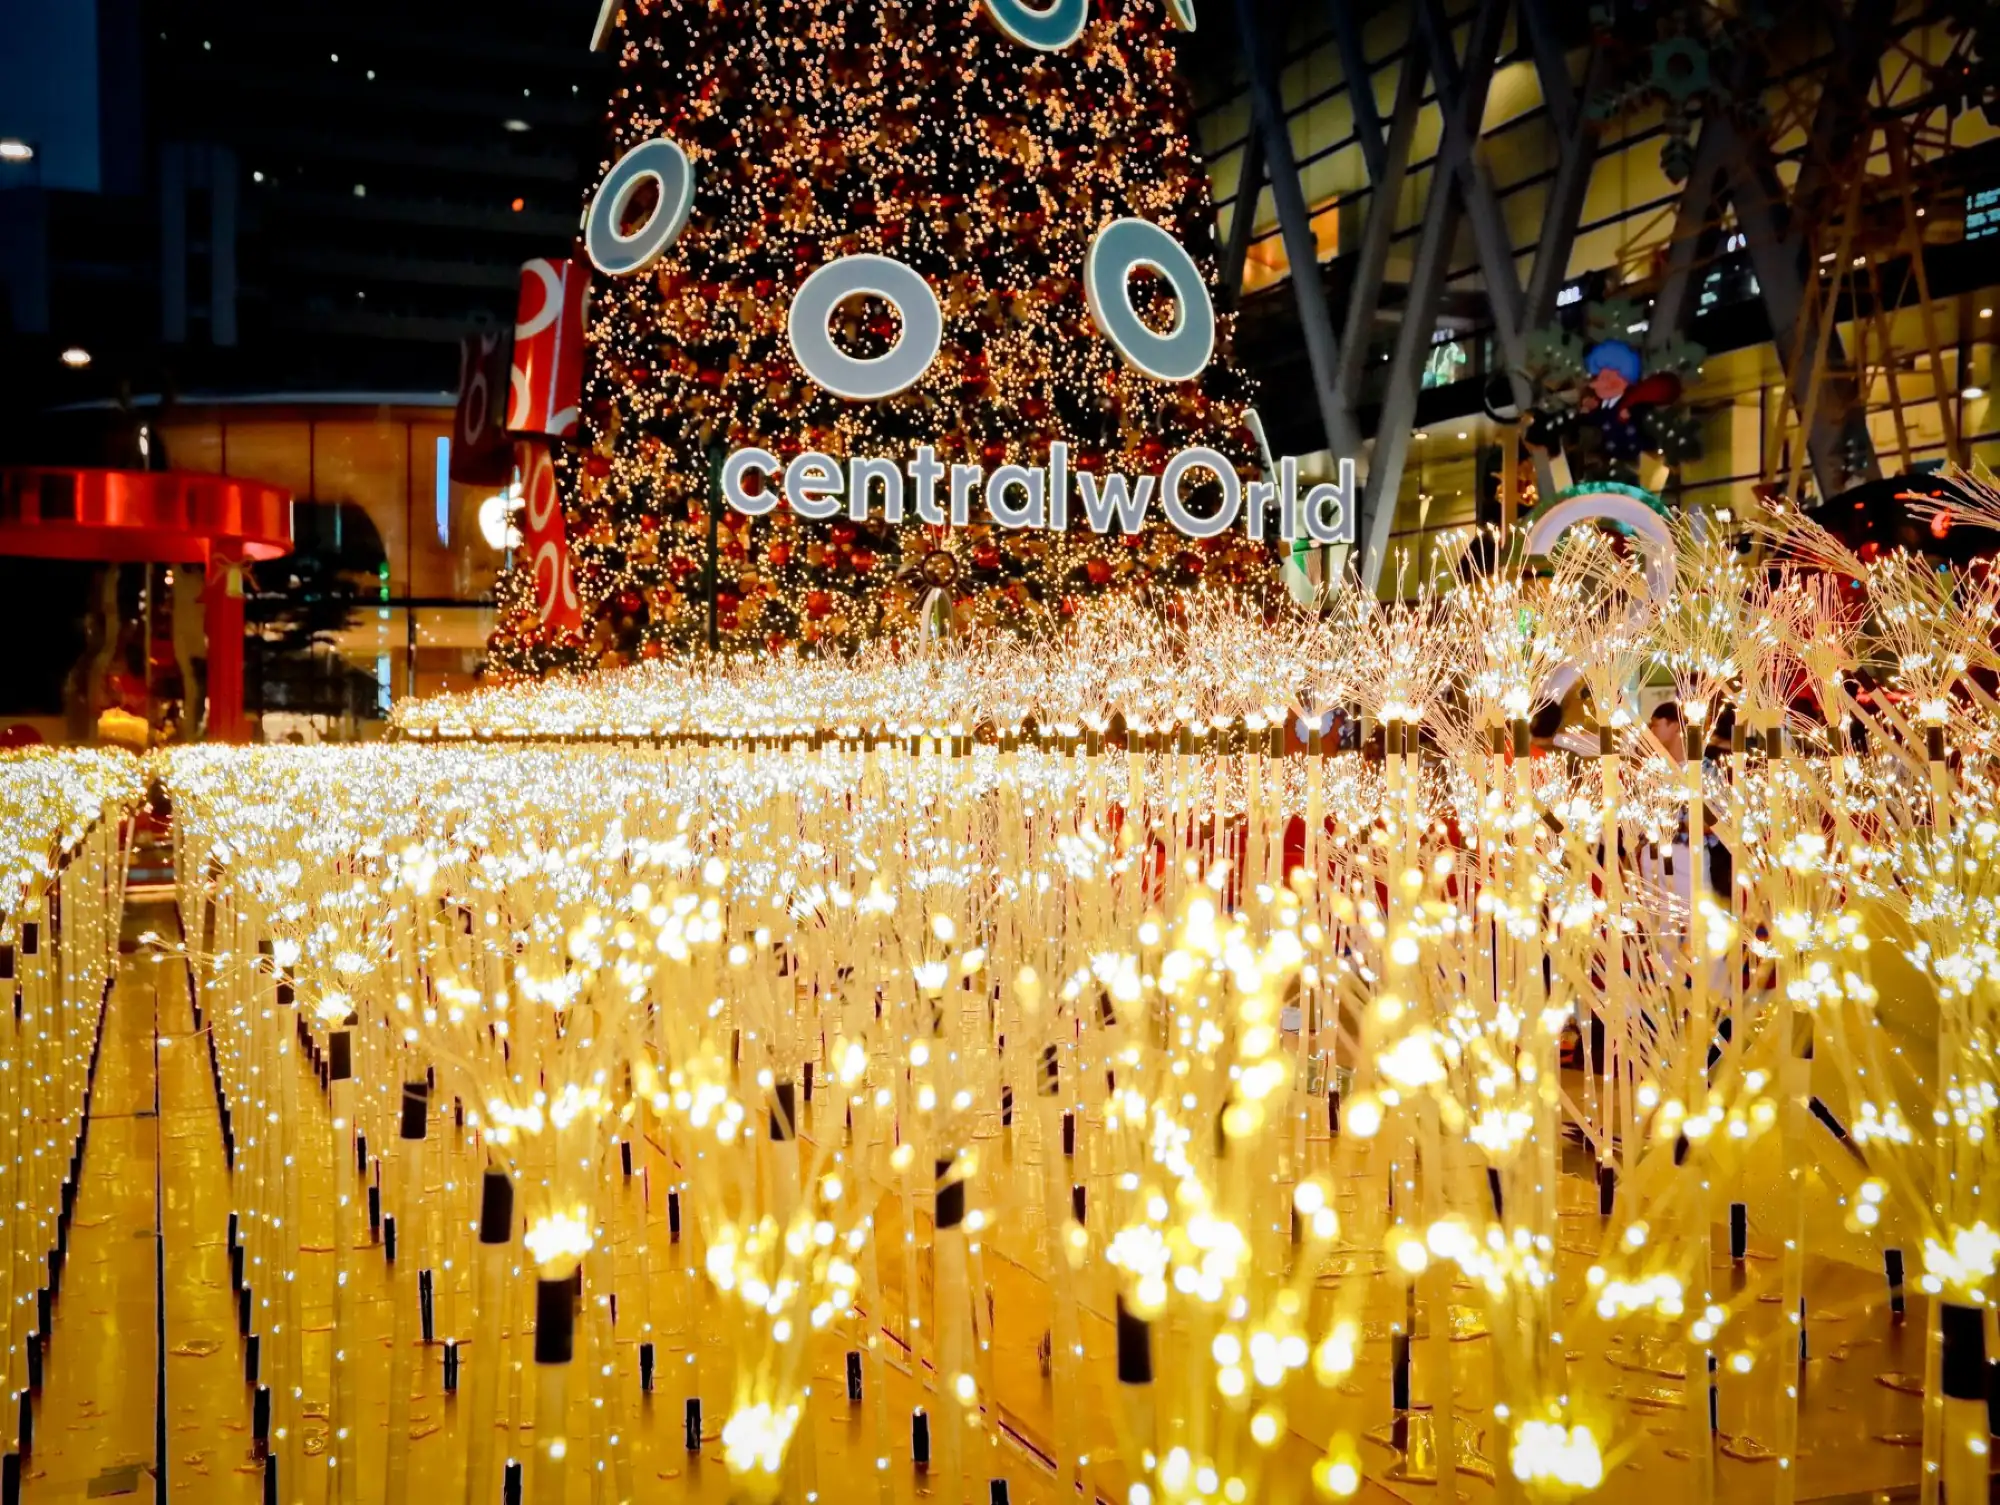 曼谷centralwOrld圣诞节佈景採用数十万个蒲公英灯光作为点亮幸福之光（图片来源：centralwOrld官方粉专）